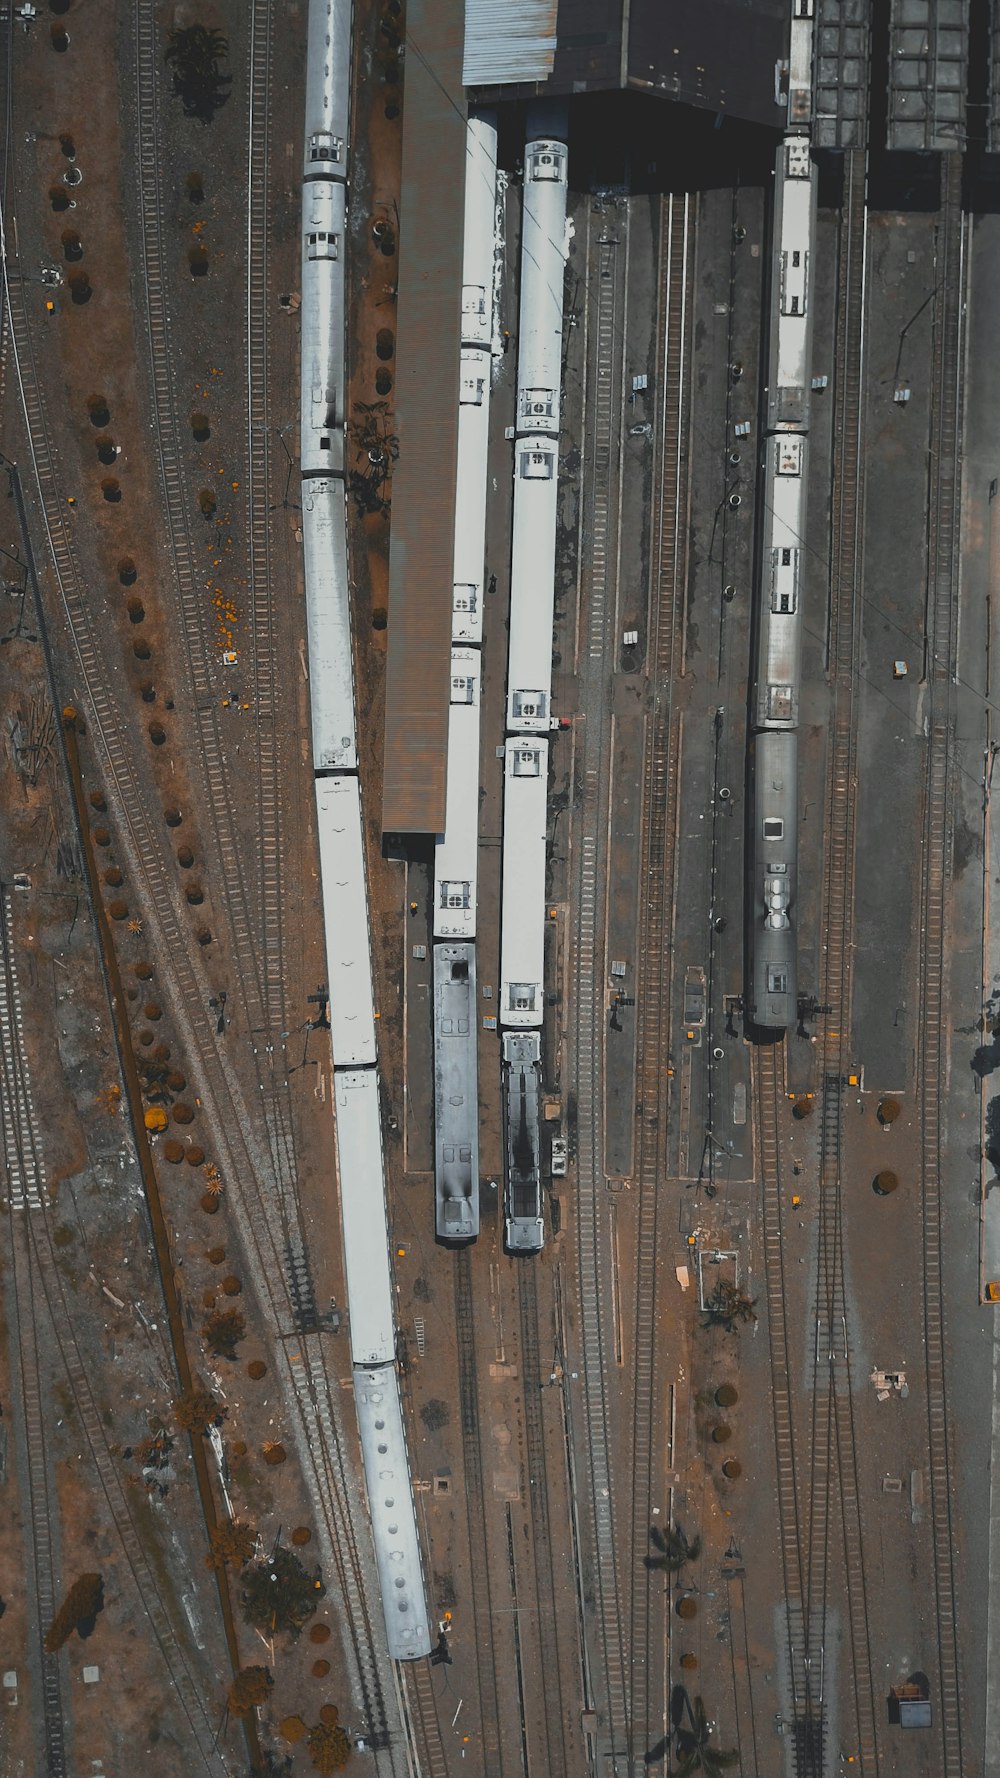 Photographie aérienne de trains gris et de voies ferrées